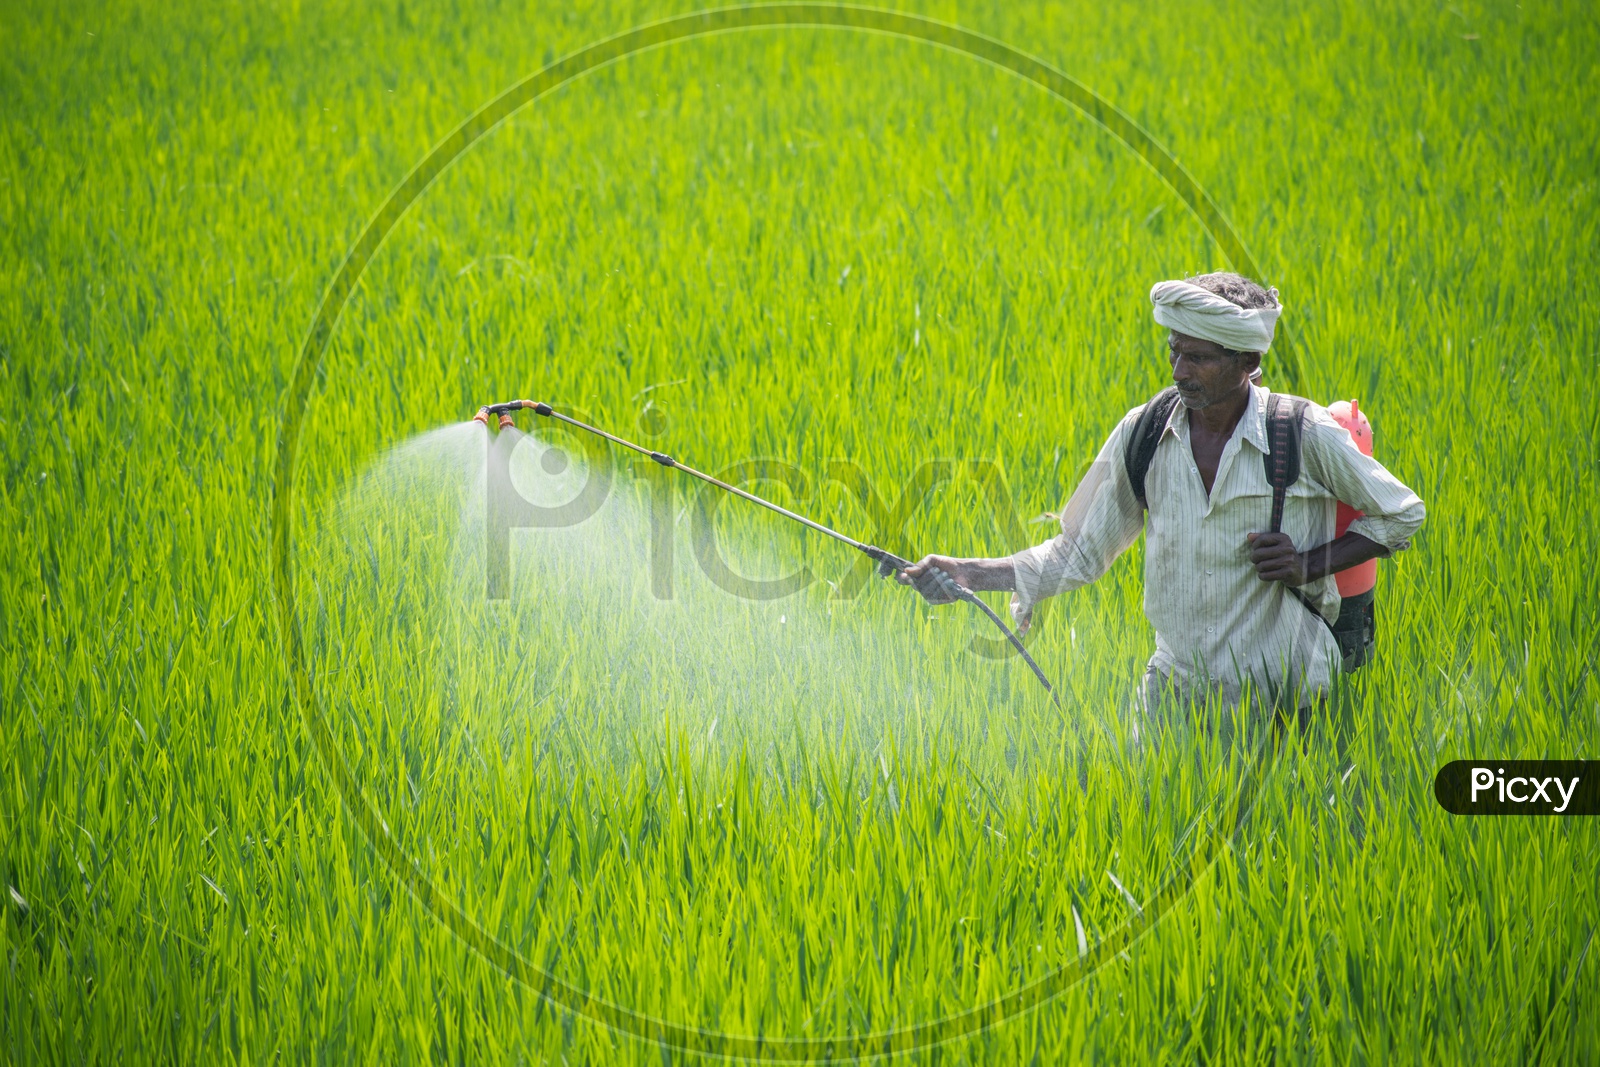 Farmer spraying fertilizers in rice field